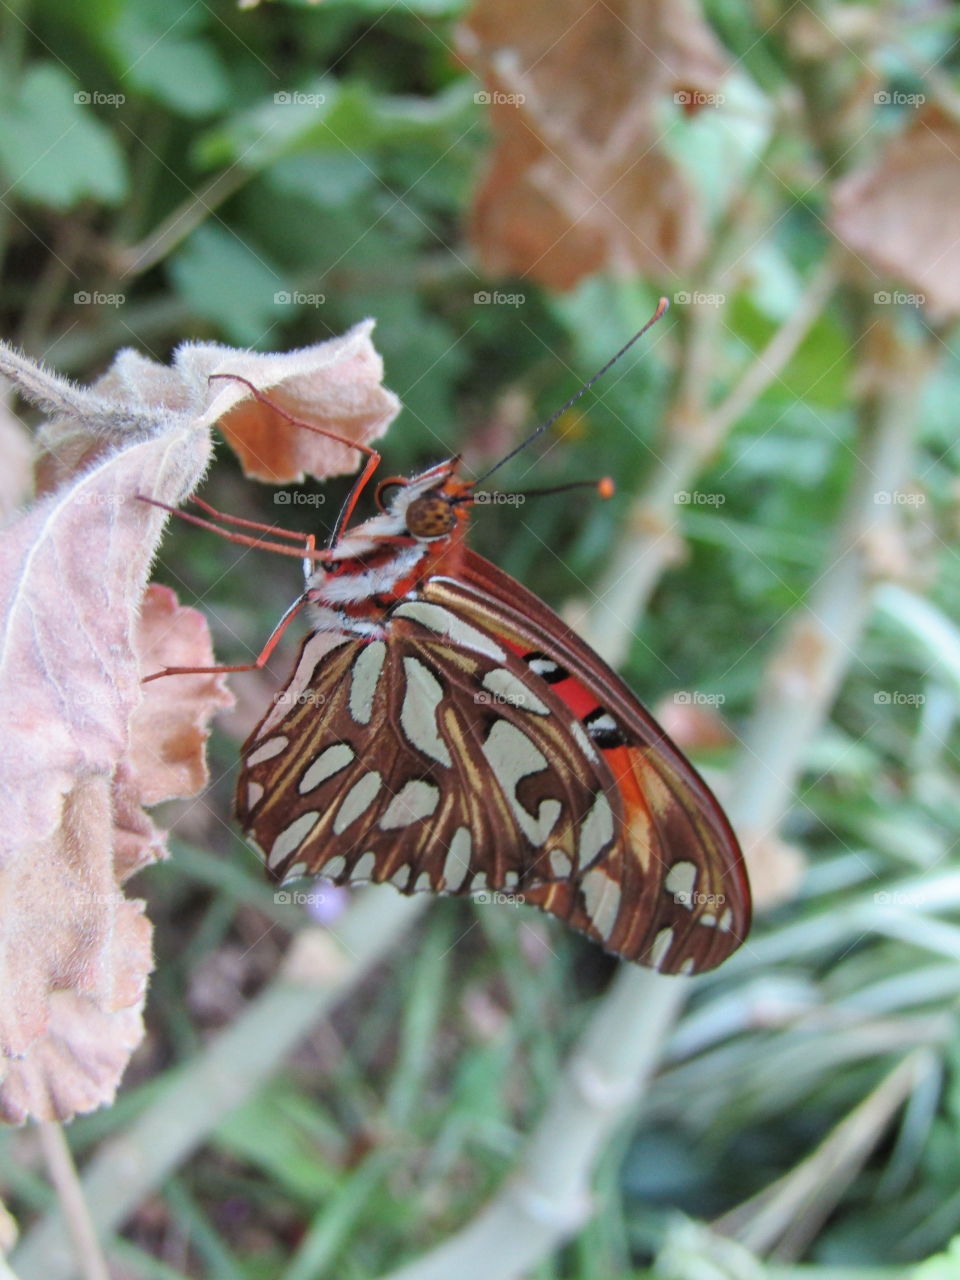 mariposa preparandose para pasar la noche con sus alas cerradas aun asi con bellos colores